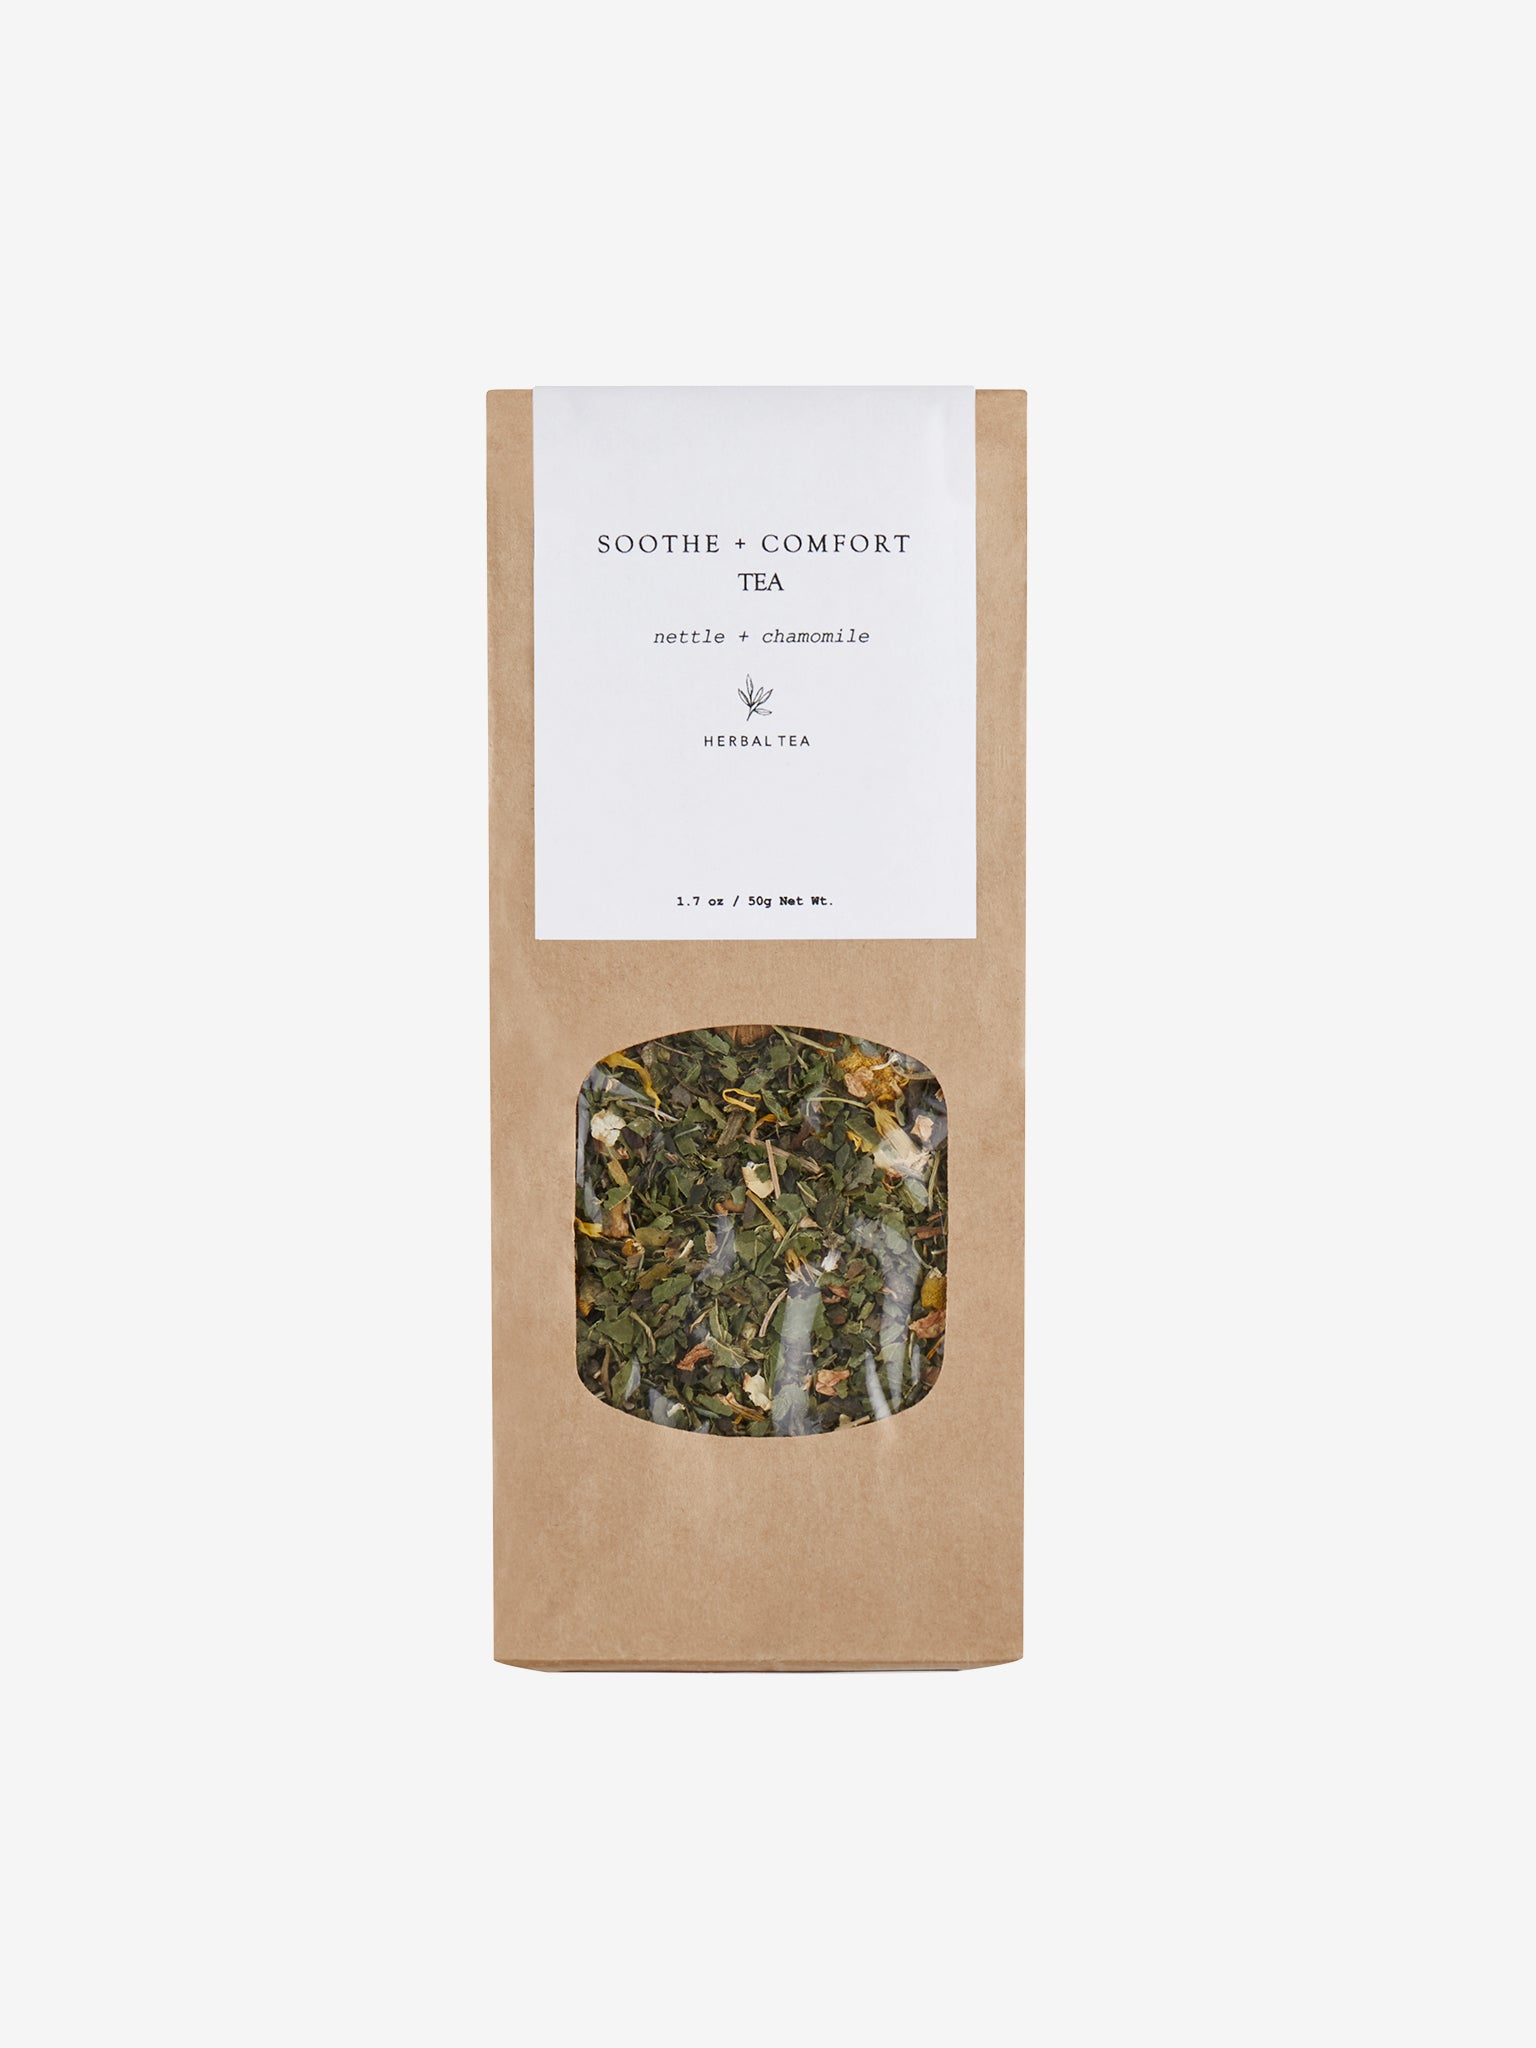 Forage Botanicals Soothe + Comfort Tea